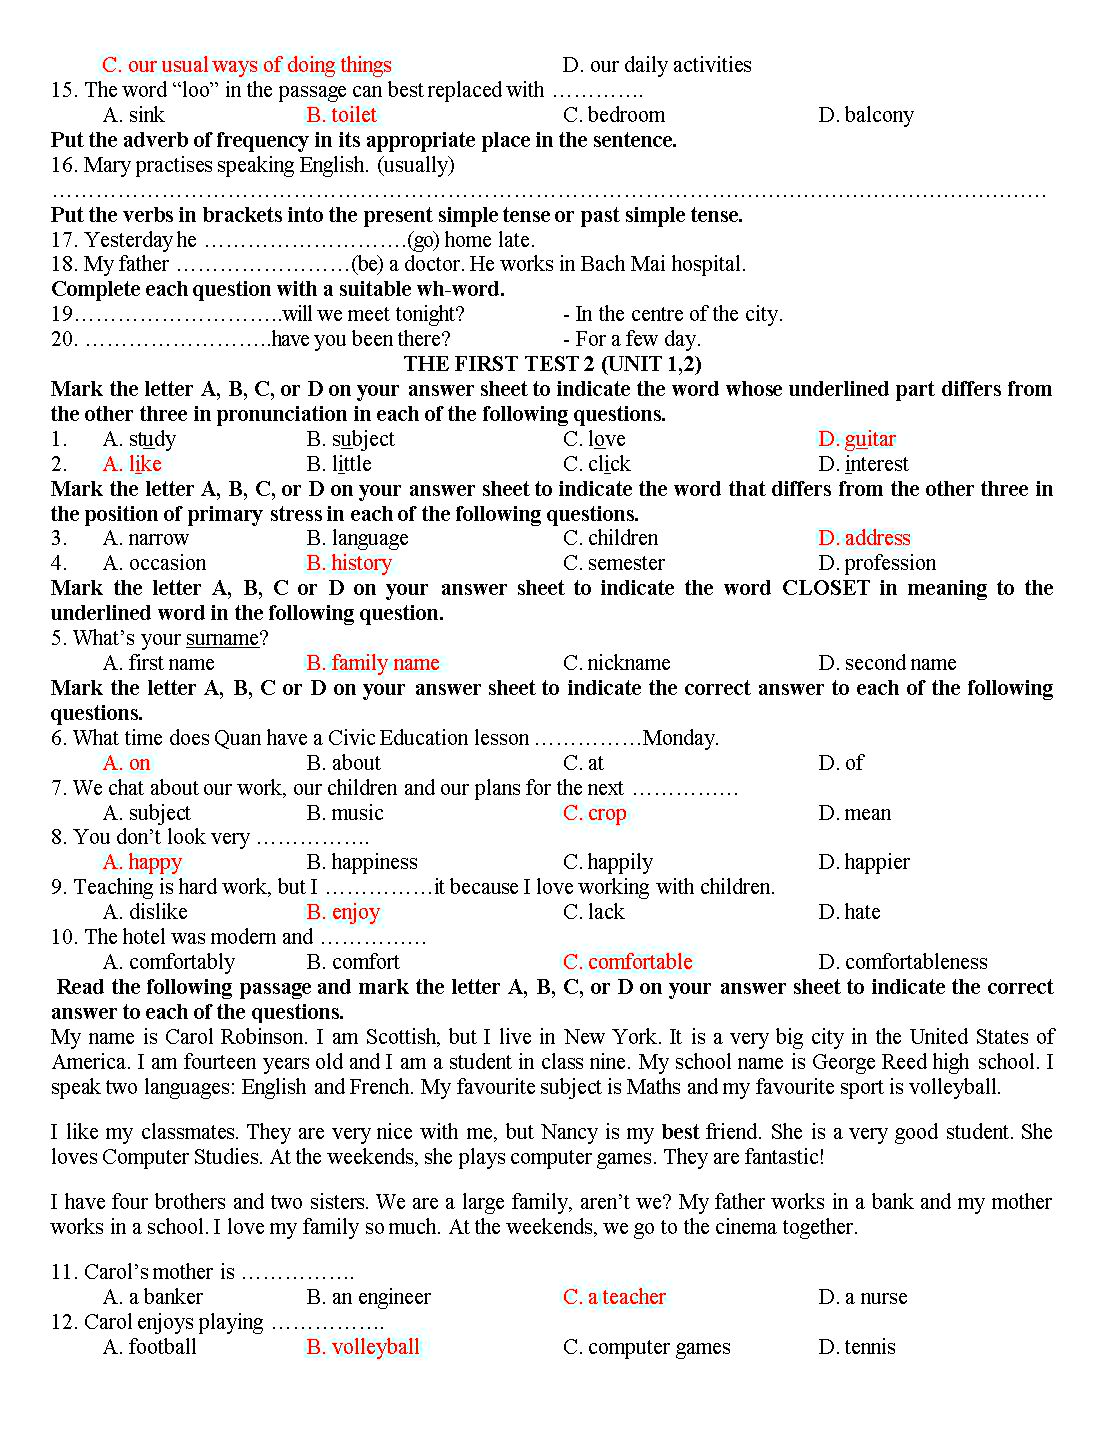 Tổng hợp đề kiểm tra 15 phút tiếng Anh lớp 10 trang 2